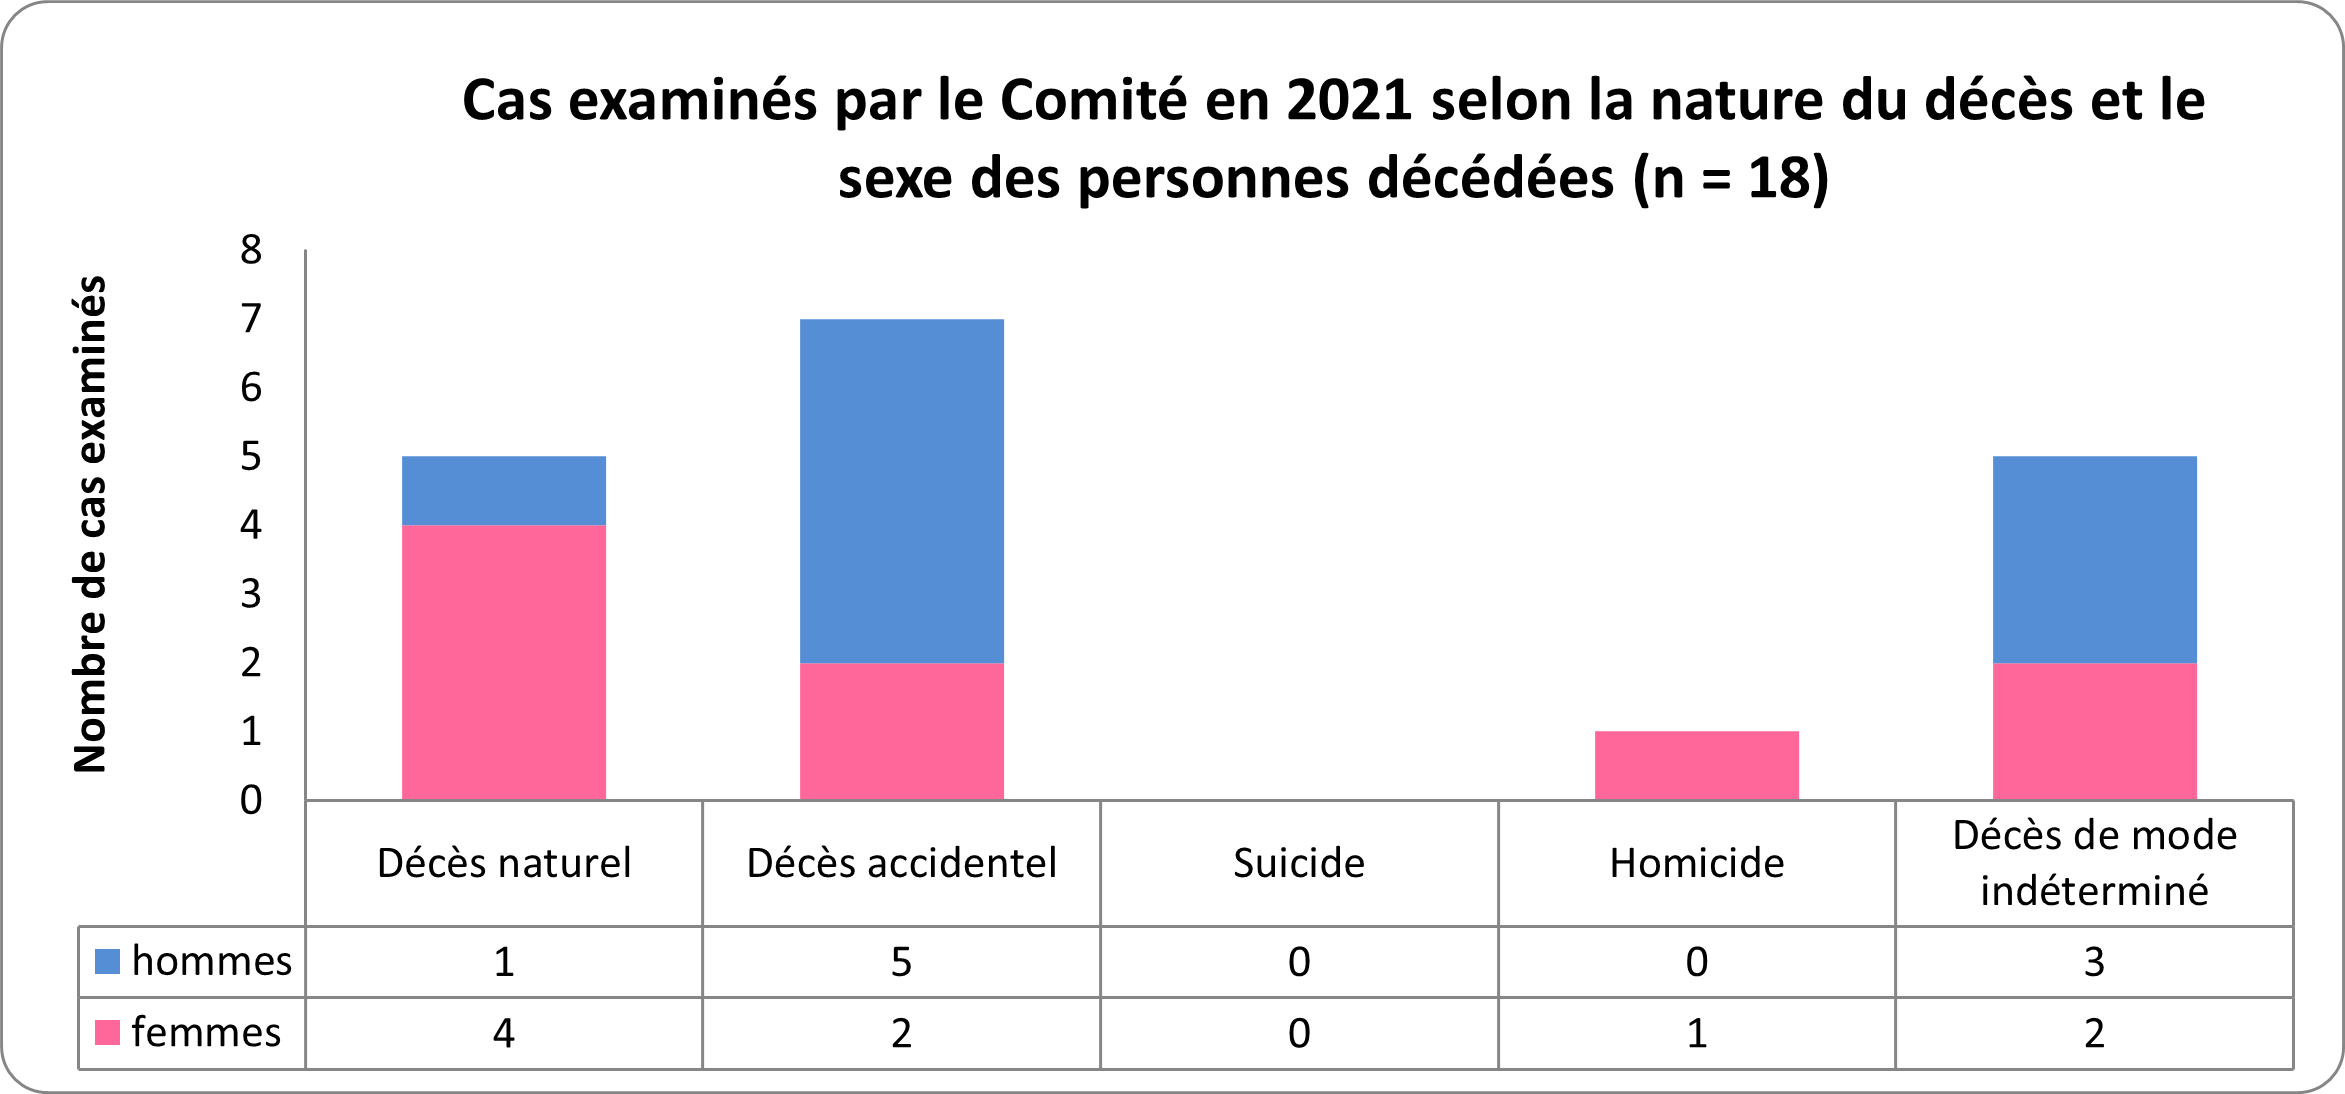 Figure 3 montre la répartition des cas examinés par le Comité en fonction du mode de décès et du sexe du défunt